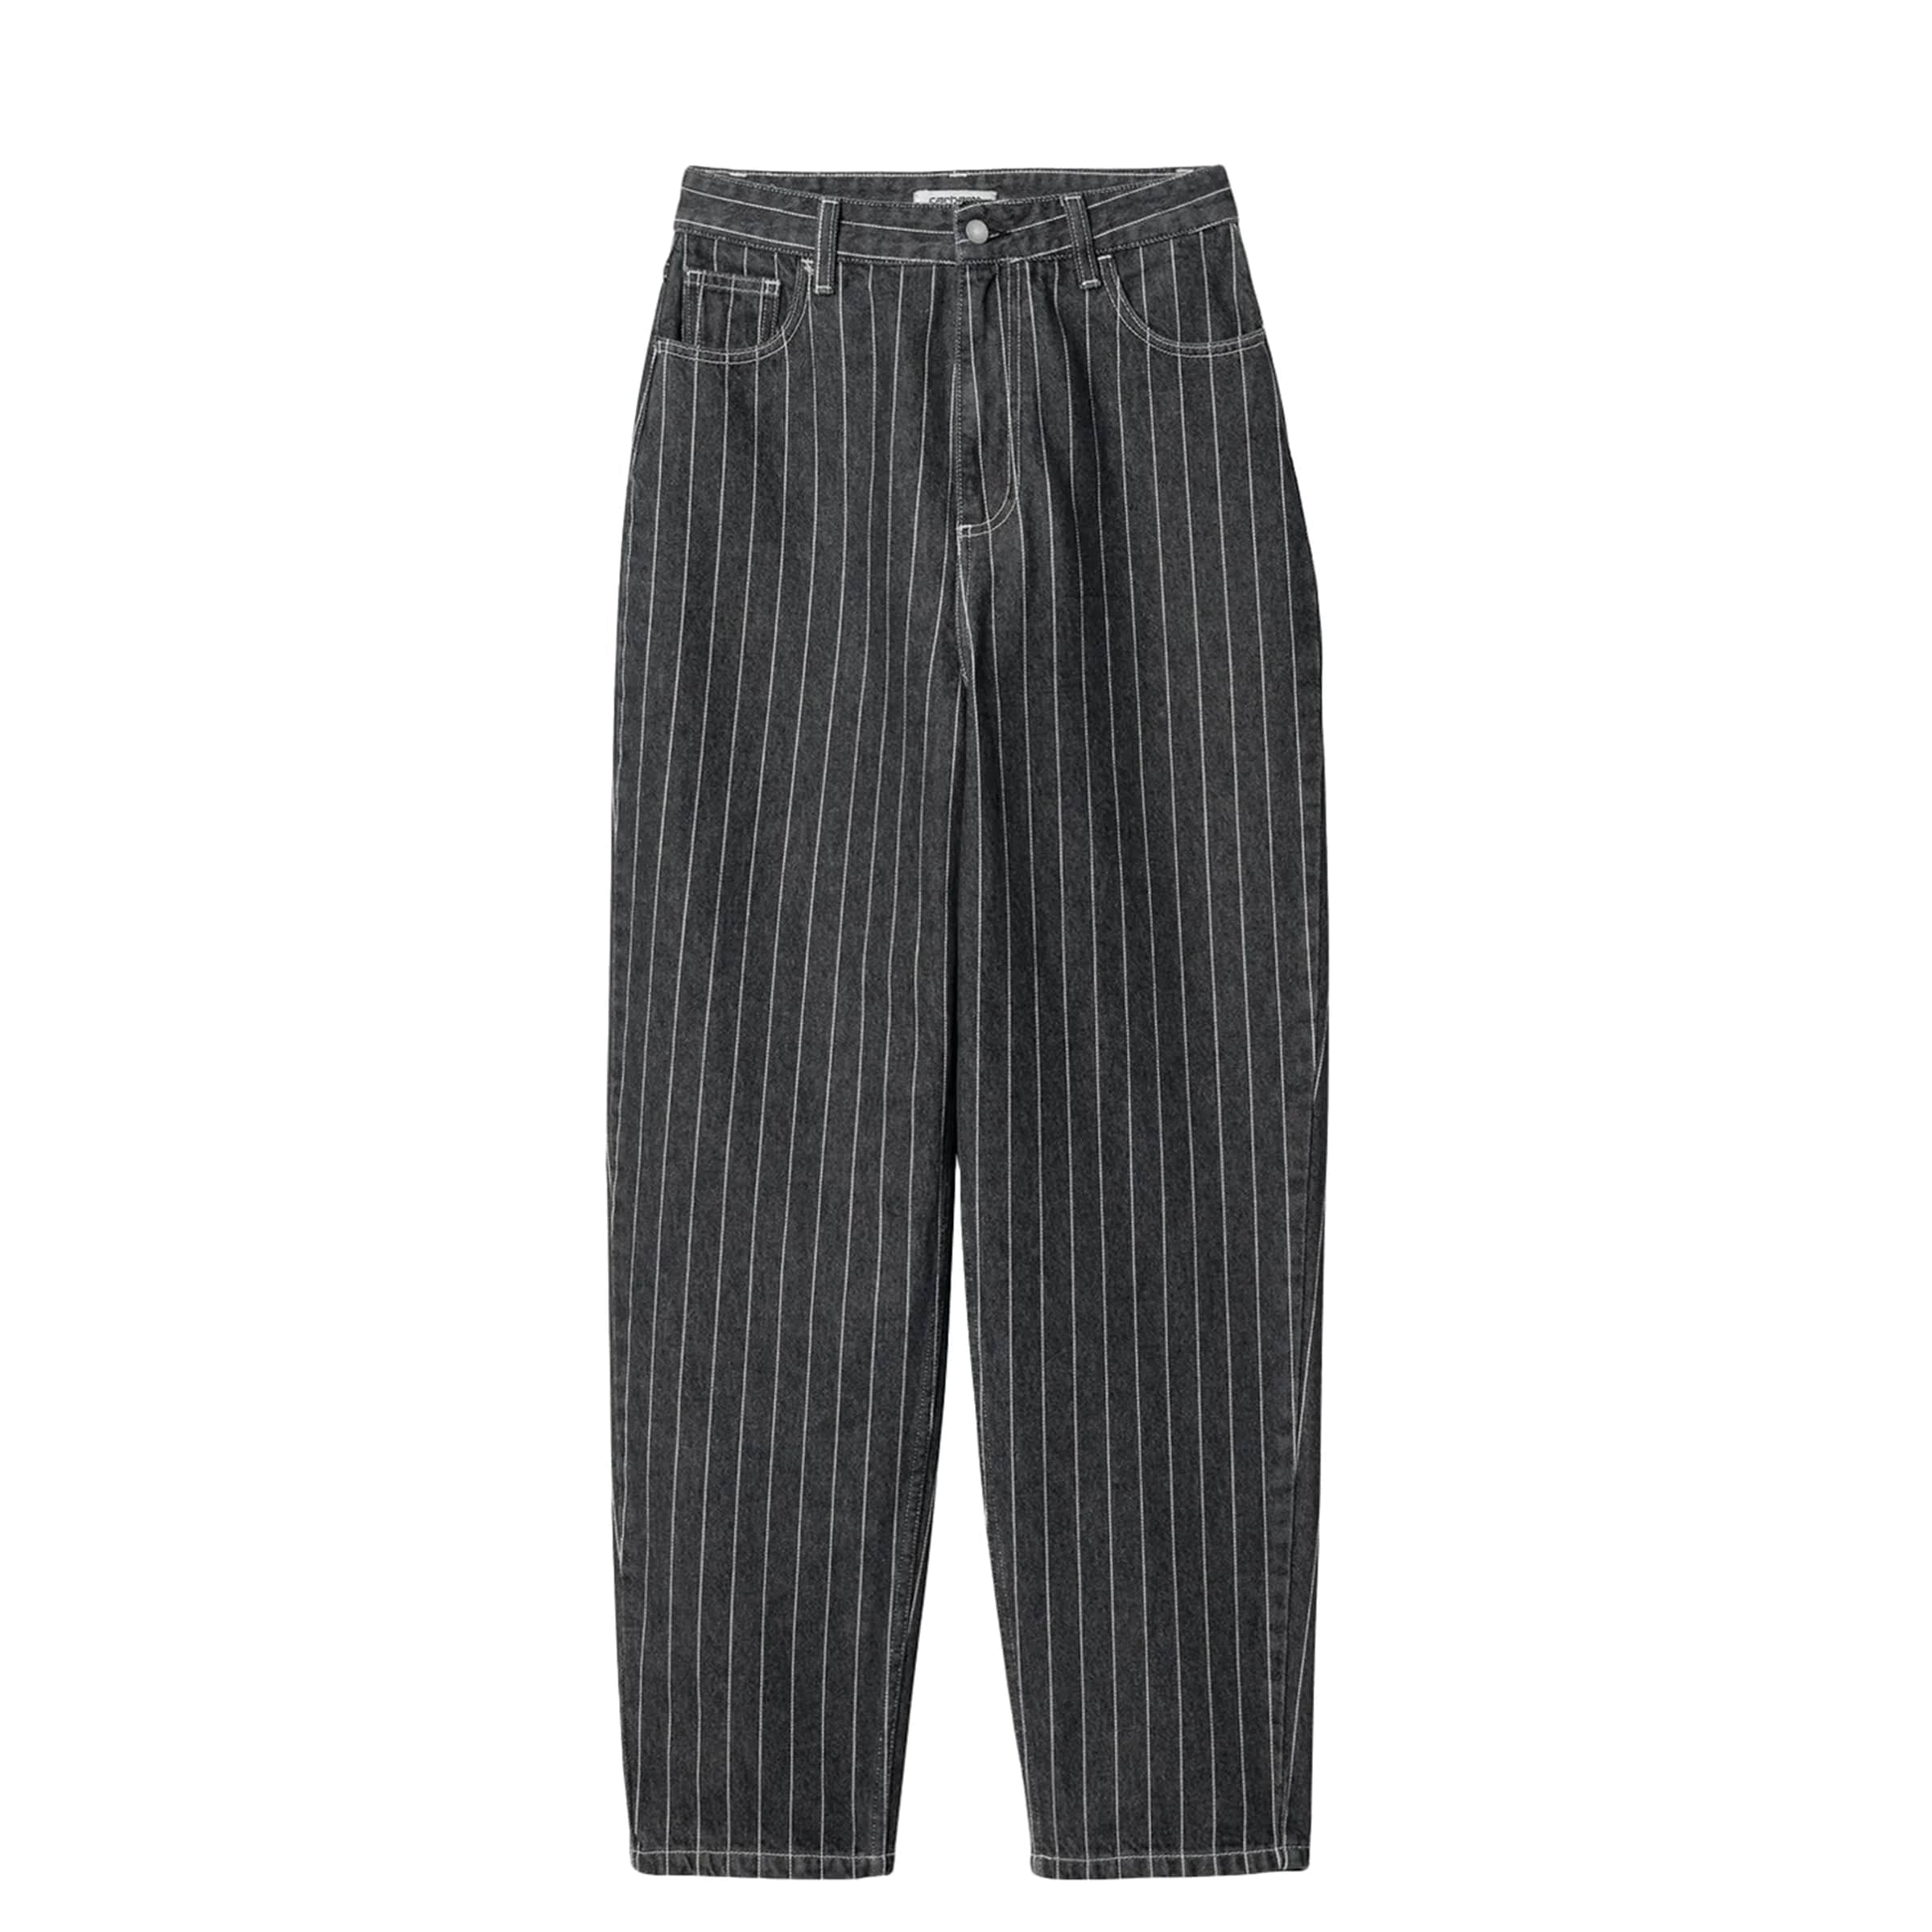 Wide-leg Pants - Black/white striped - Ladies | H&M US